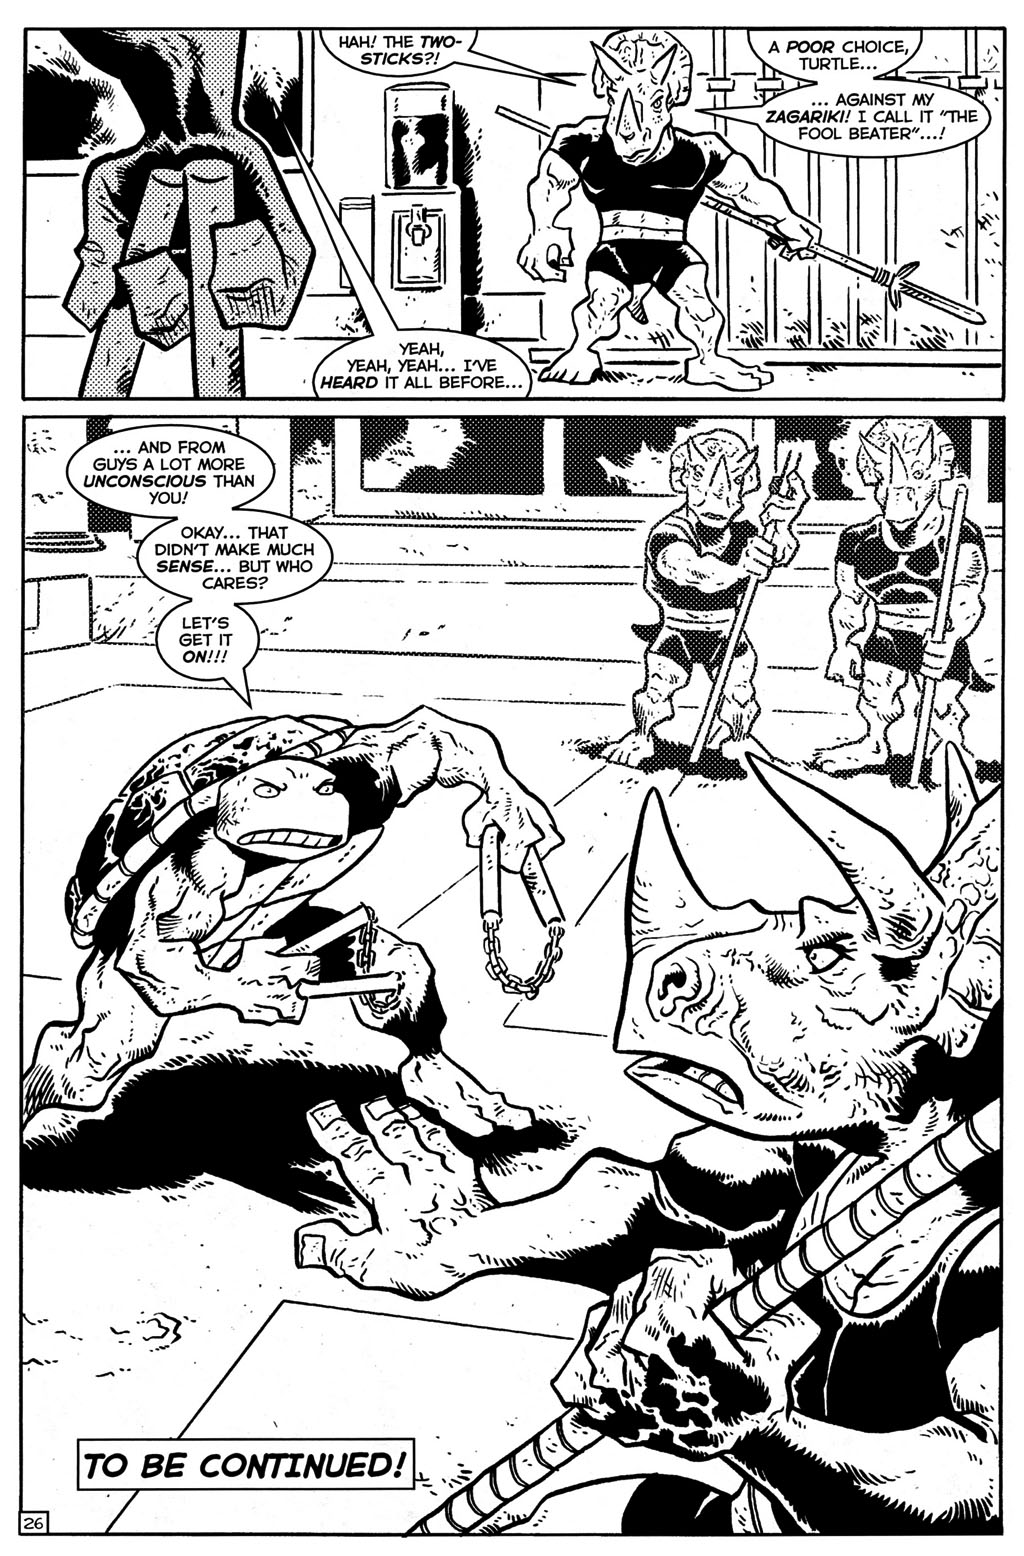 Read online TMNT: Teenage Mutant Ninja Turtles comic -  Issue #28 - 27